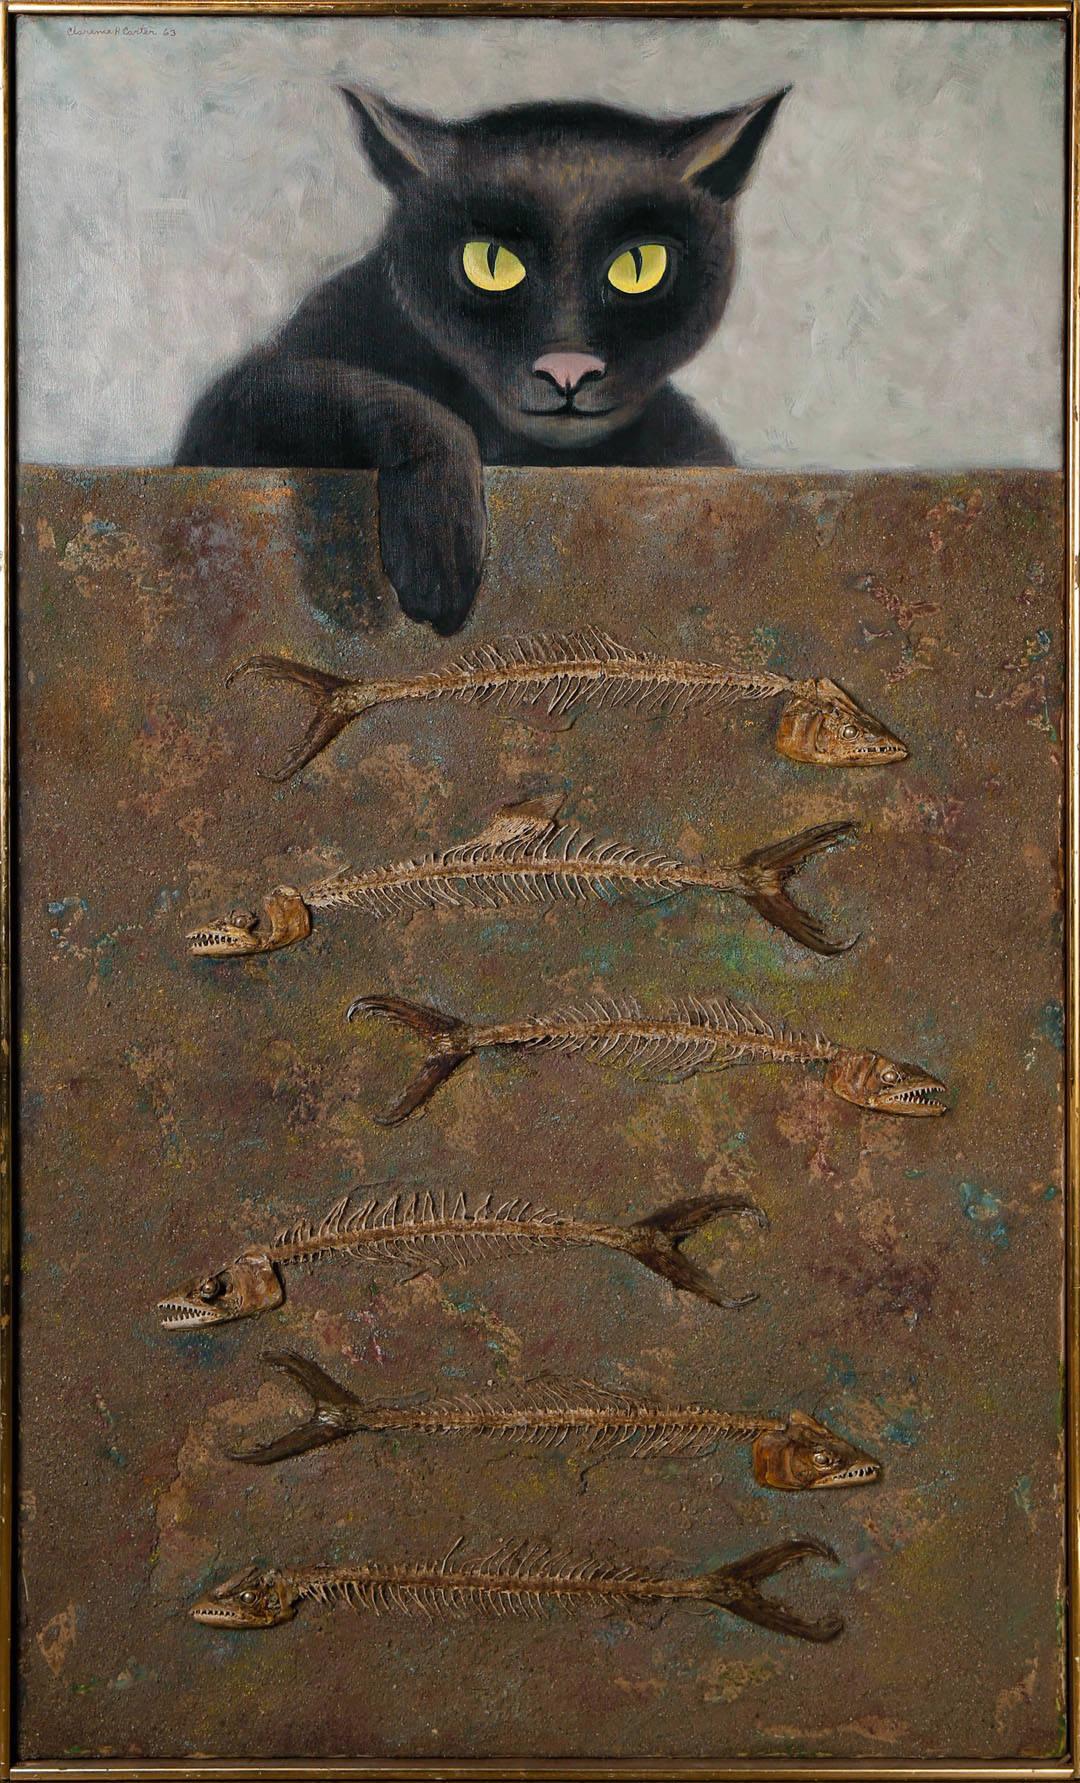 Animal Painting Clarence Holbrook Carter - Over and Above : n° 6, chat surréaliste avec os de poissons, école de Cleveland du 20e siècle